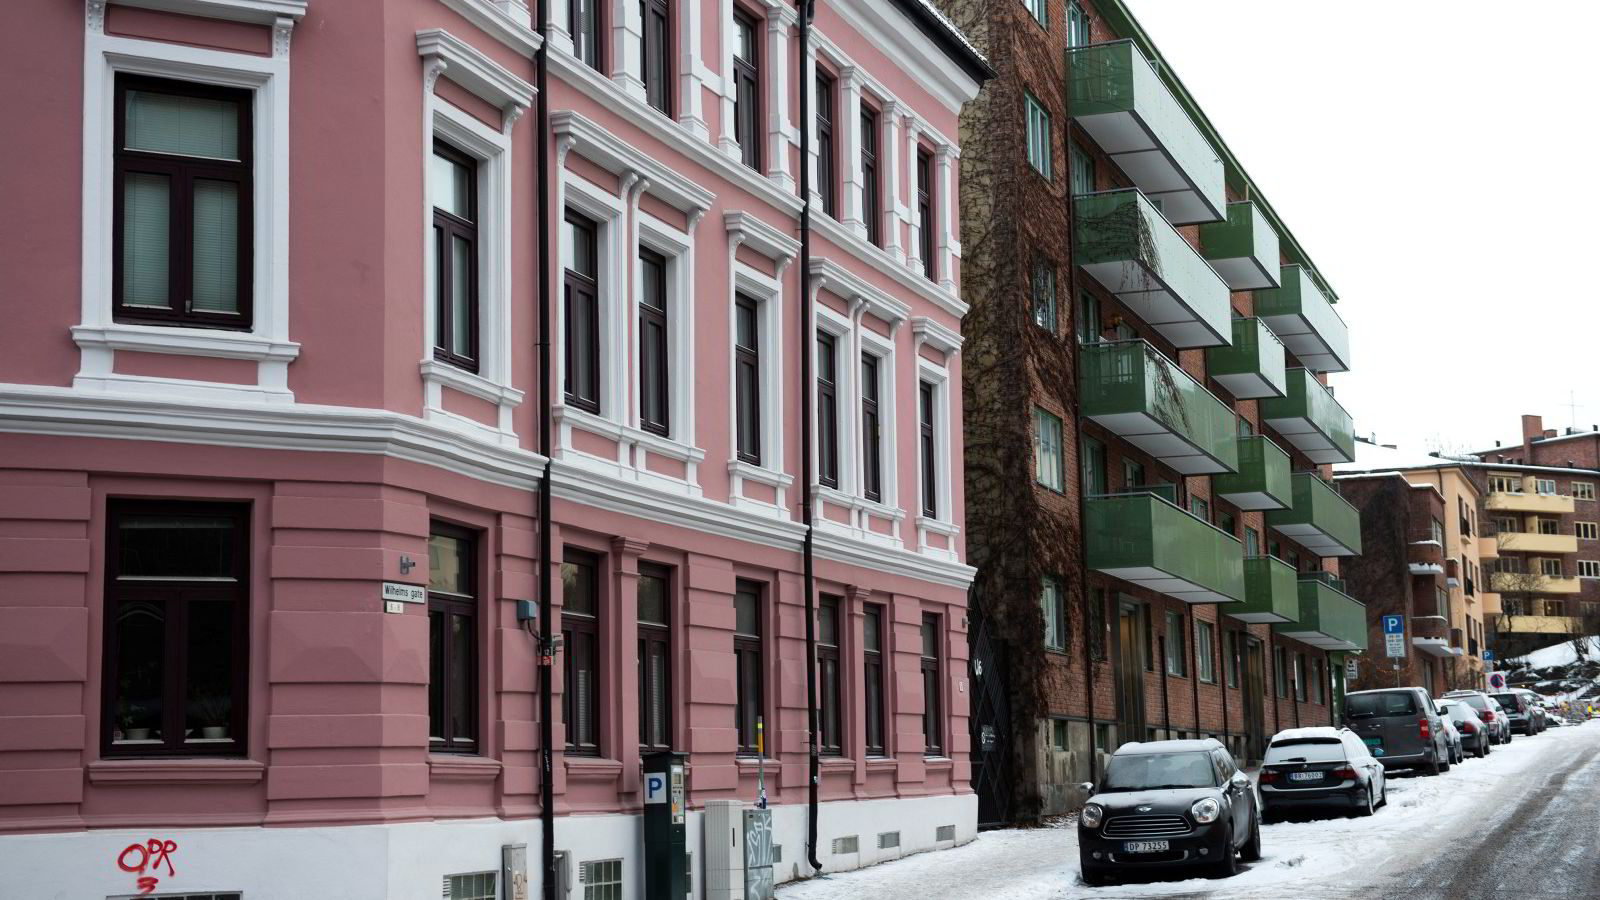 En sykepleier har råd til 2,4 prosent av boligene i Oslo